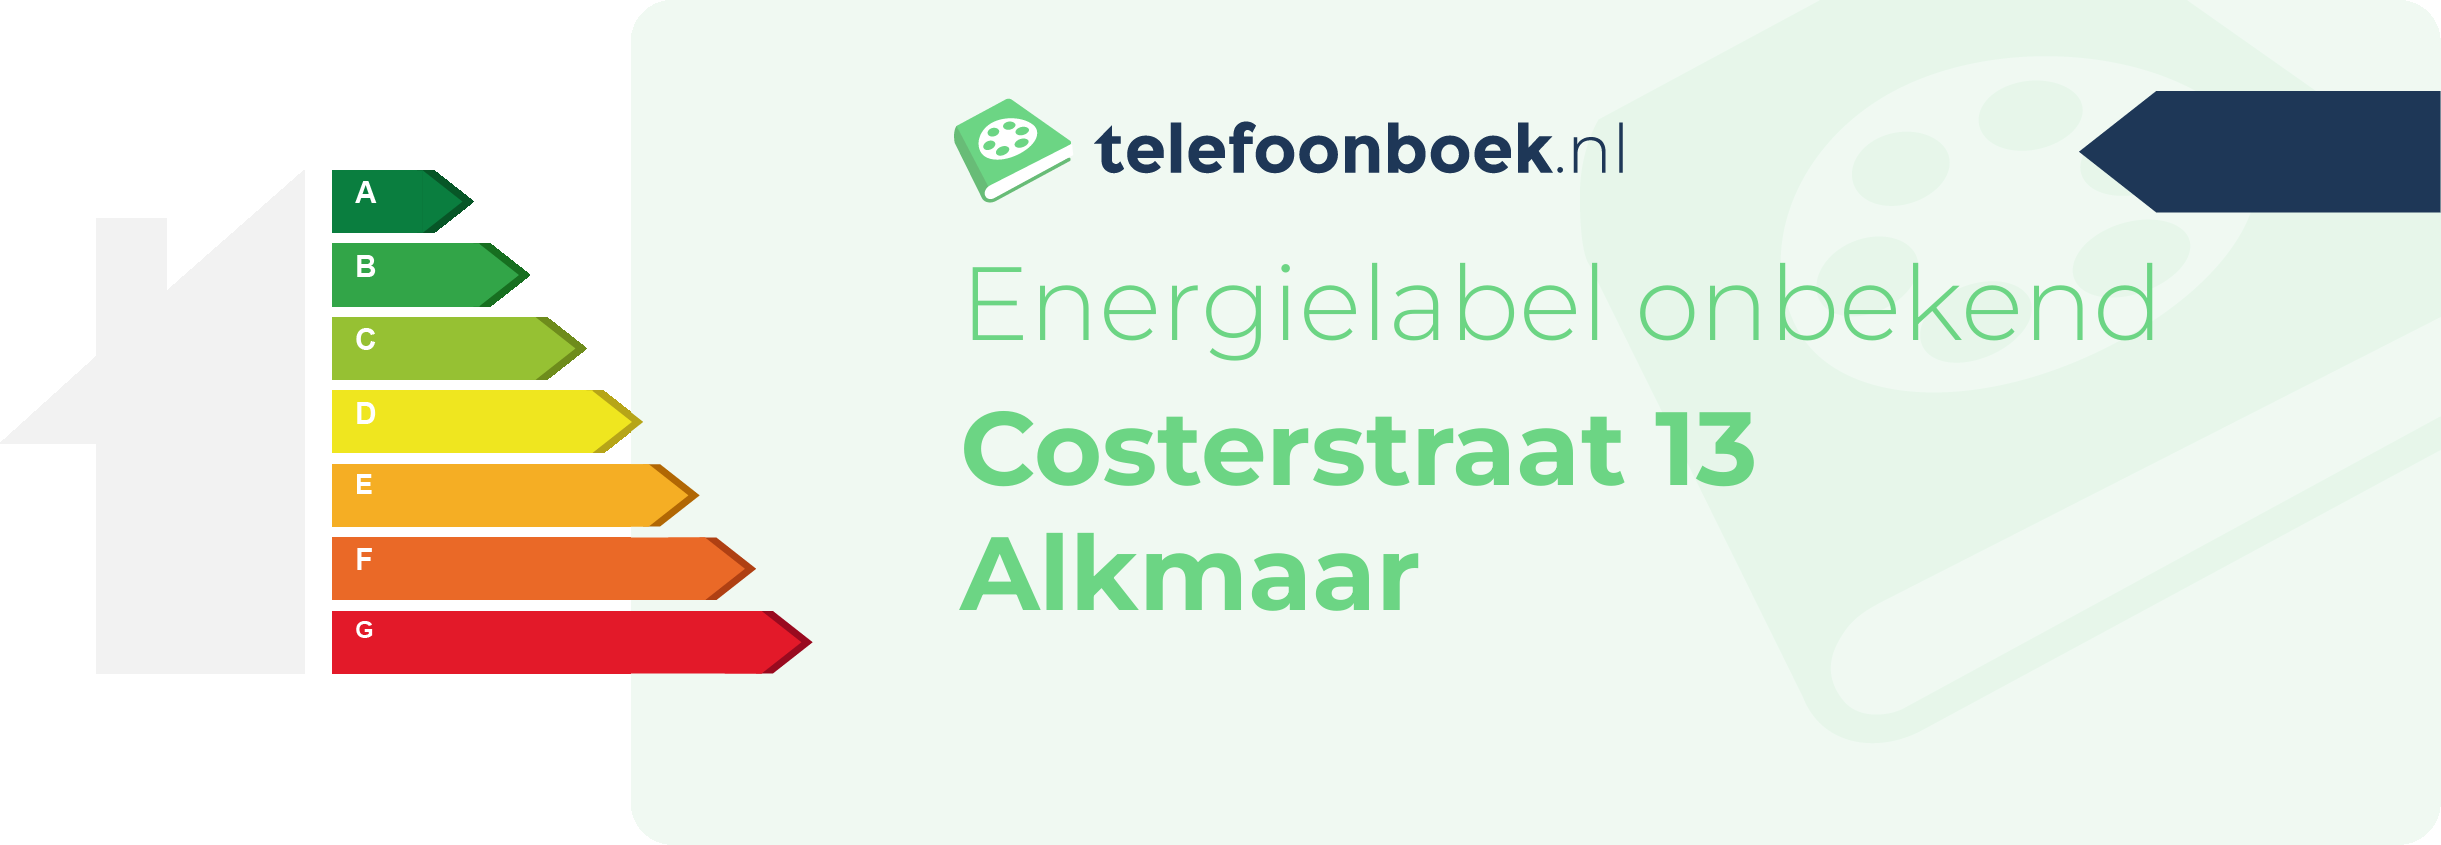 Energielabel Costerstraat 13 Alkmaar